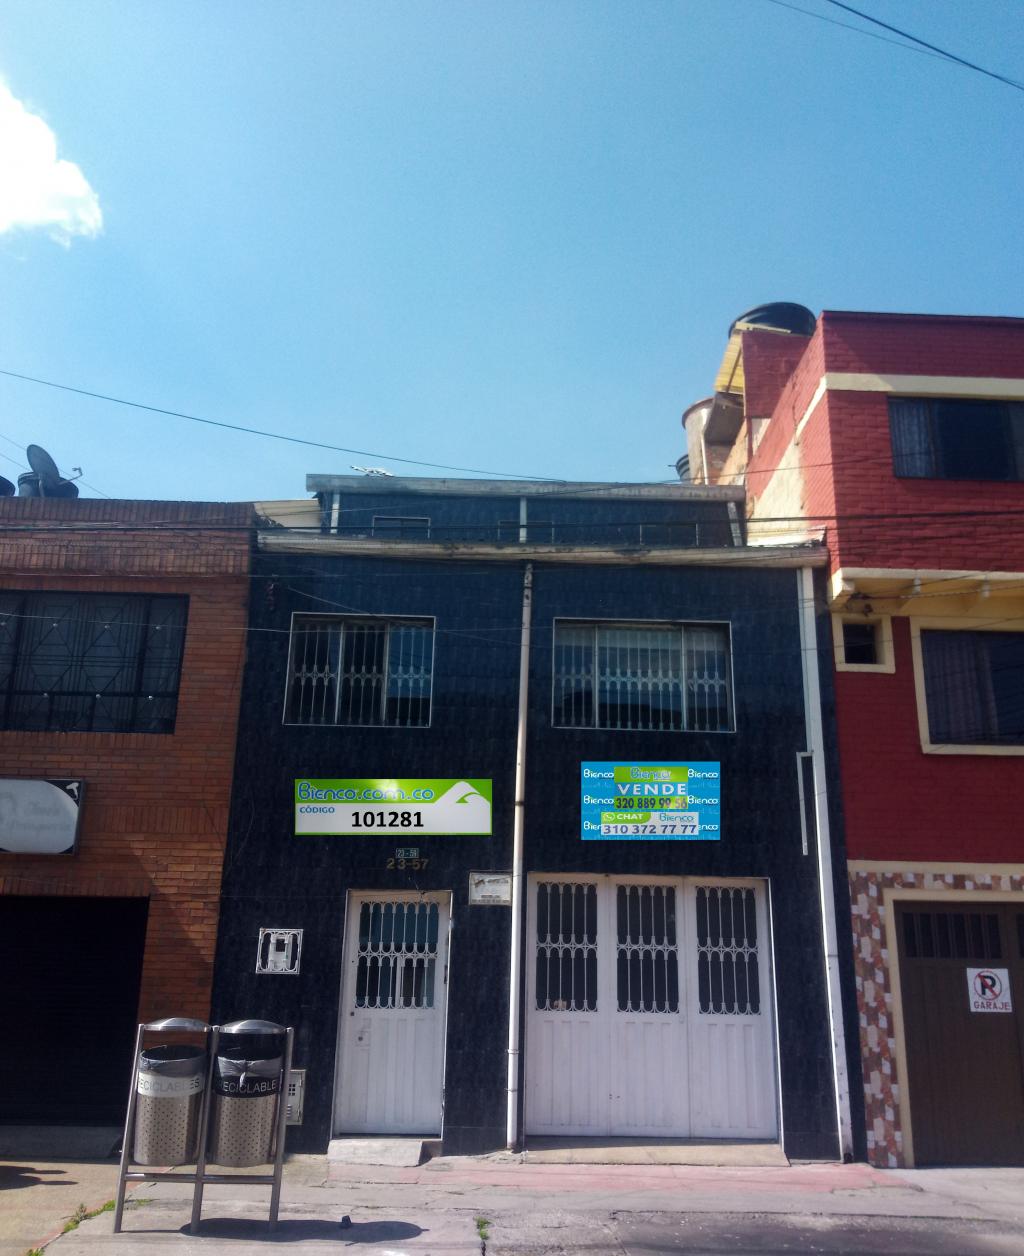 Casa en Venta por Bienco S.A ubicado en Bogotá. El código del inmueble es: 7055328